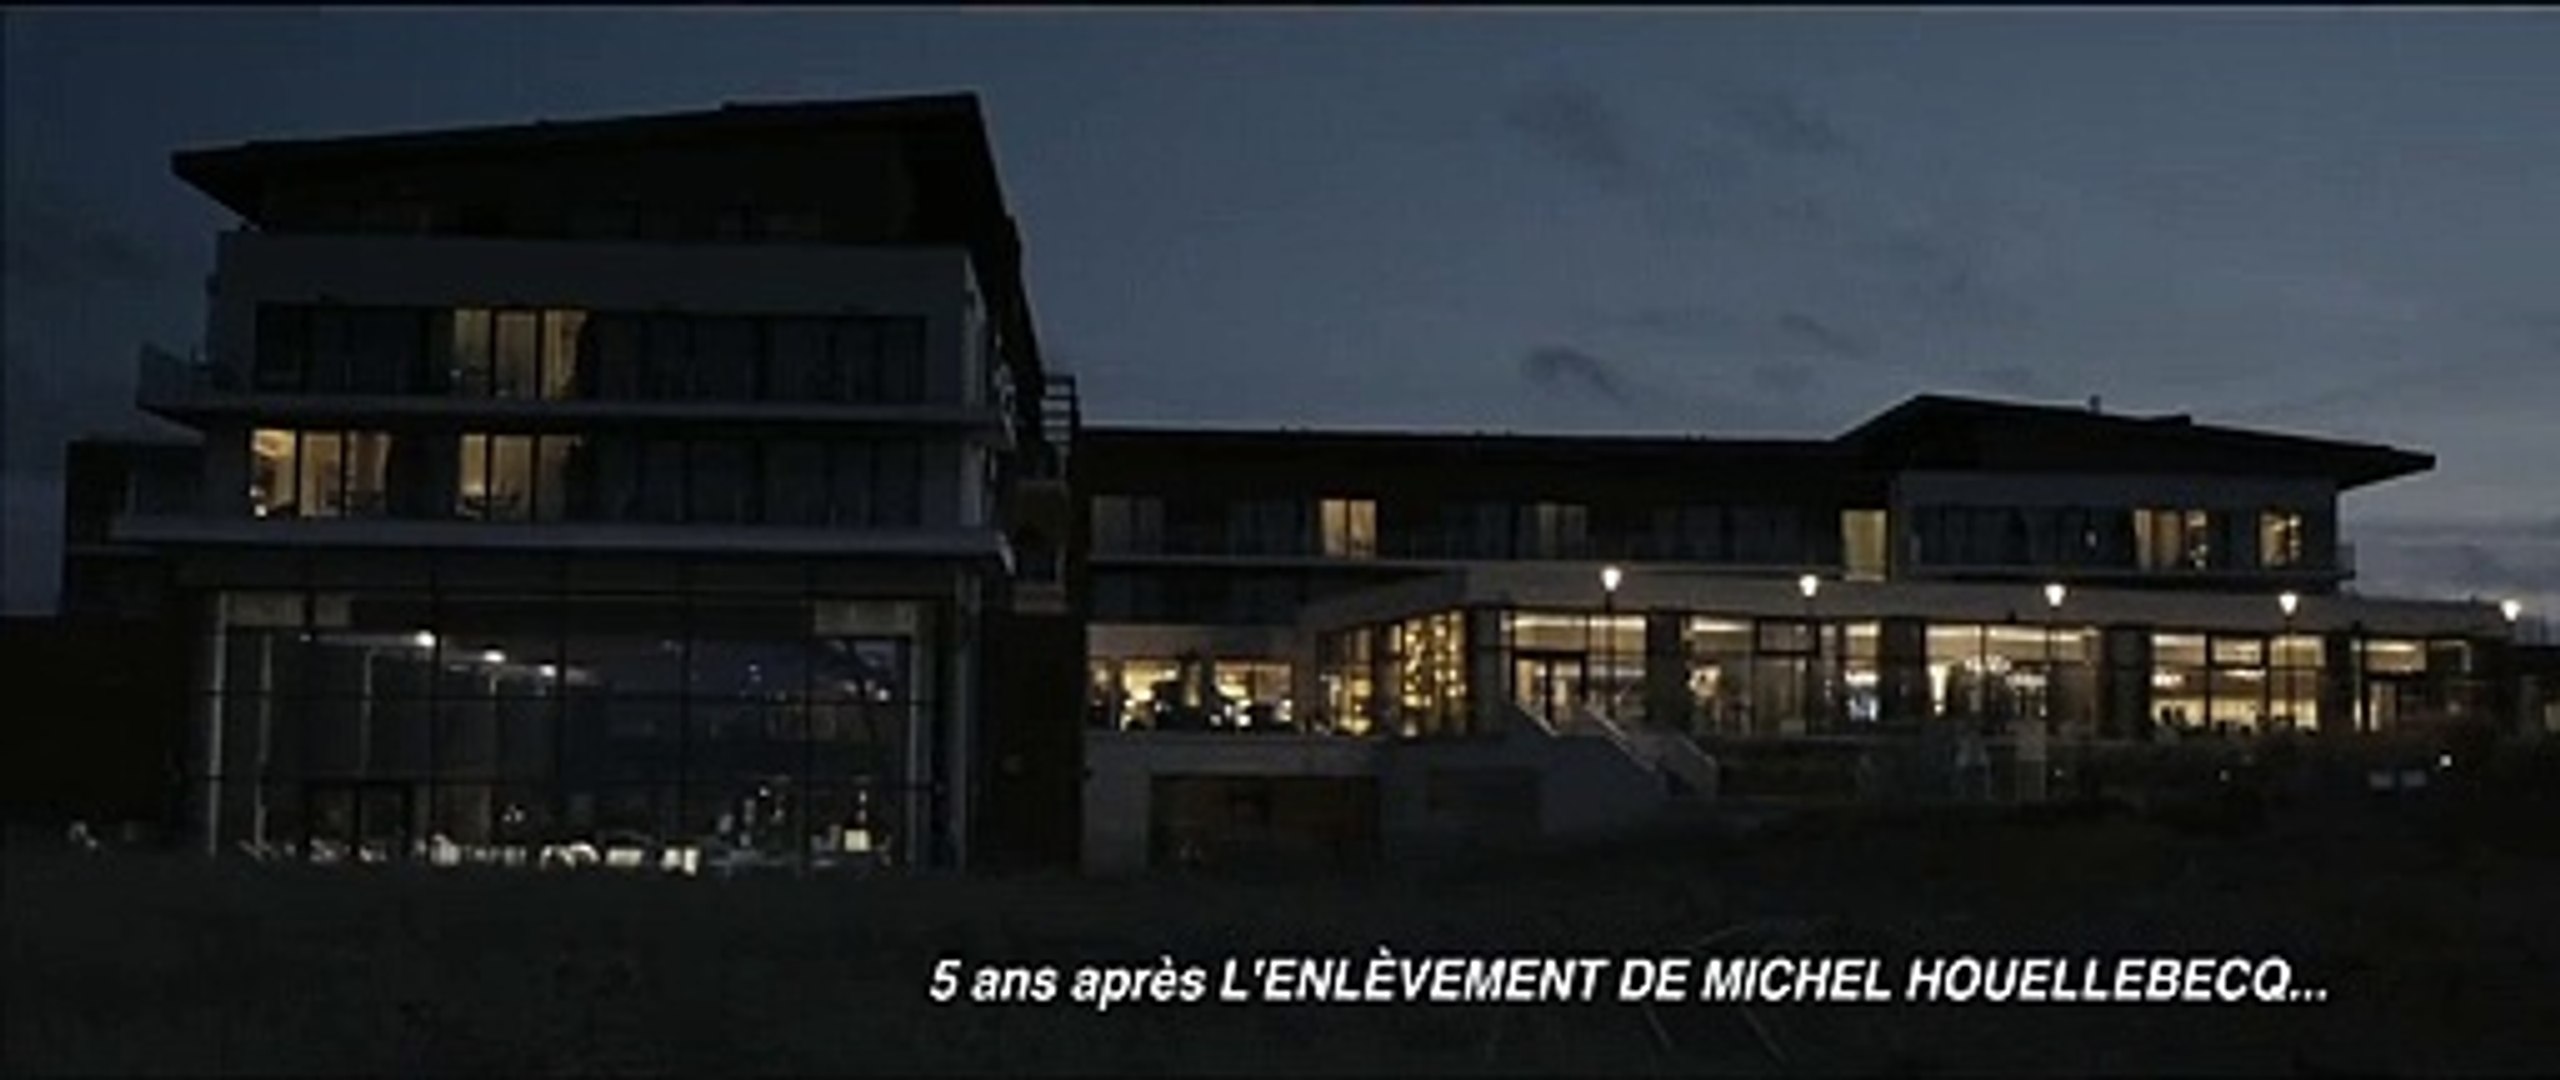 Thalasso Bande-annonce Teaser VF (Comédie 2019) Michel Houellebecq, Gérard  Depardieu - Vidéo Dailymotion